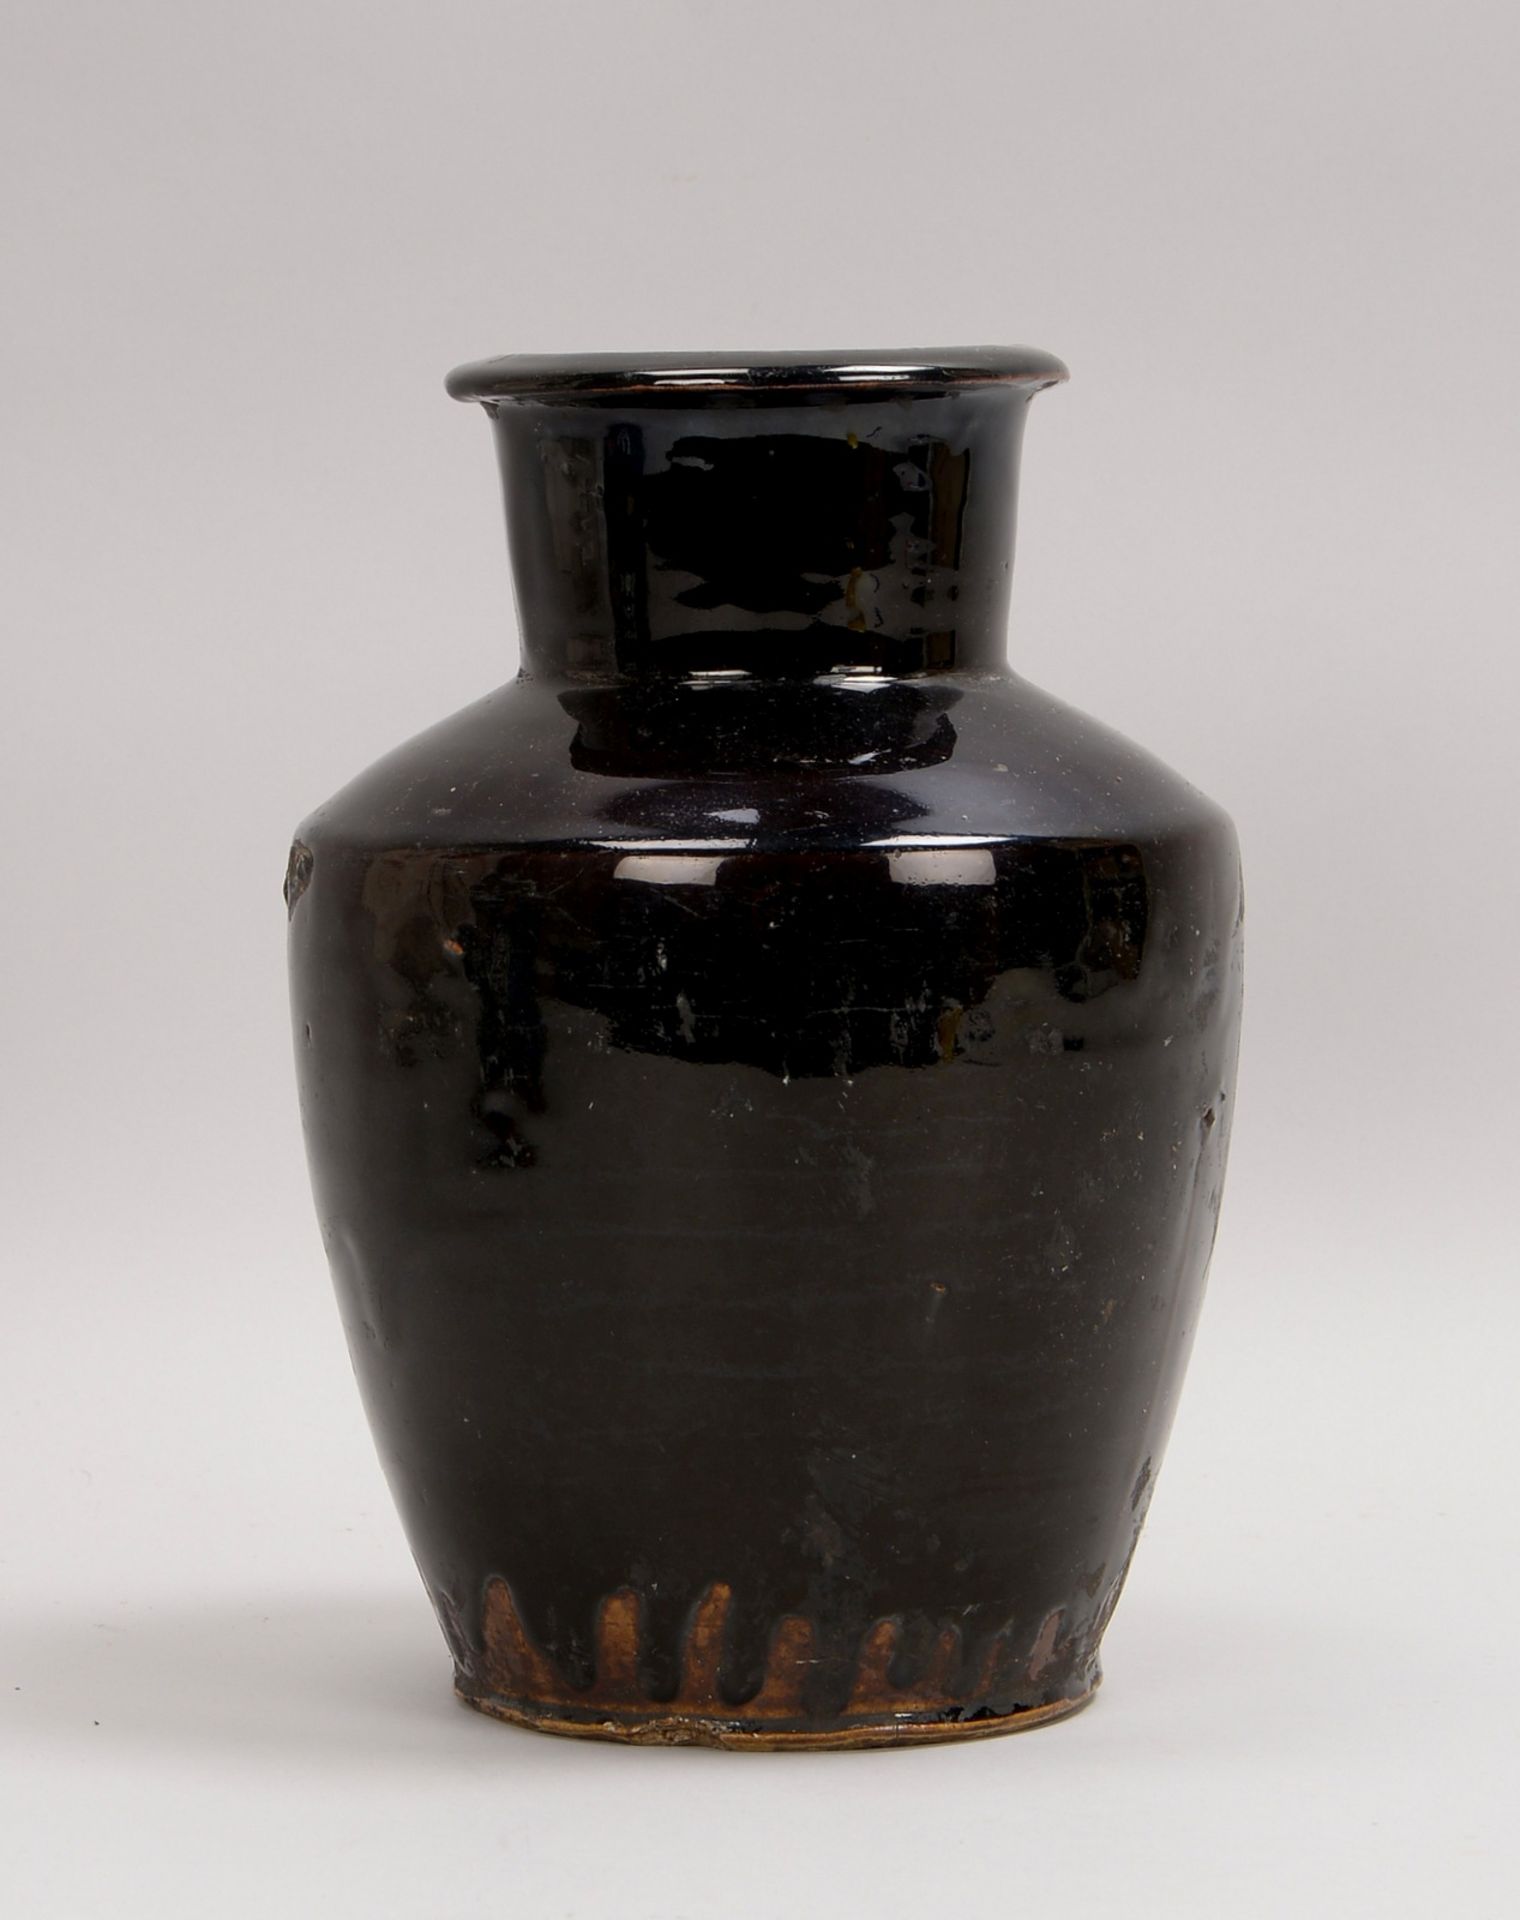 Vase (China, 16. Jh. - Ming-Dynastie), Keramik, mit schwarzer Glasur; Höhe 28 cm